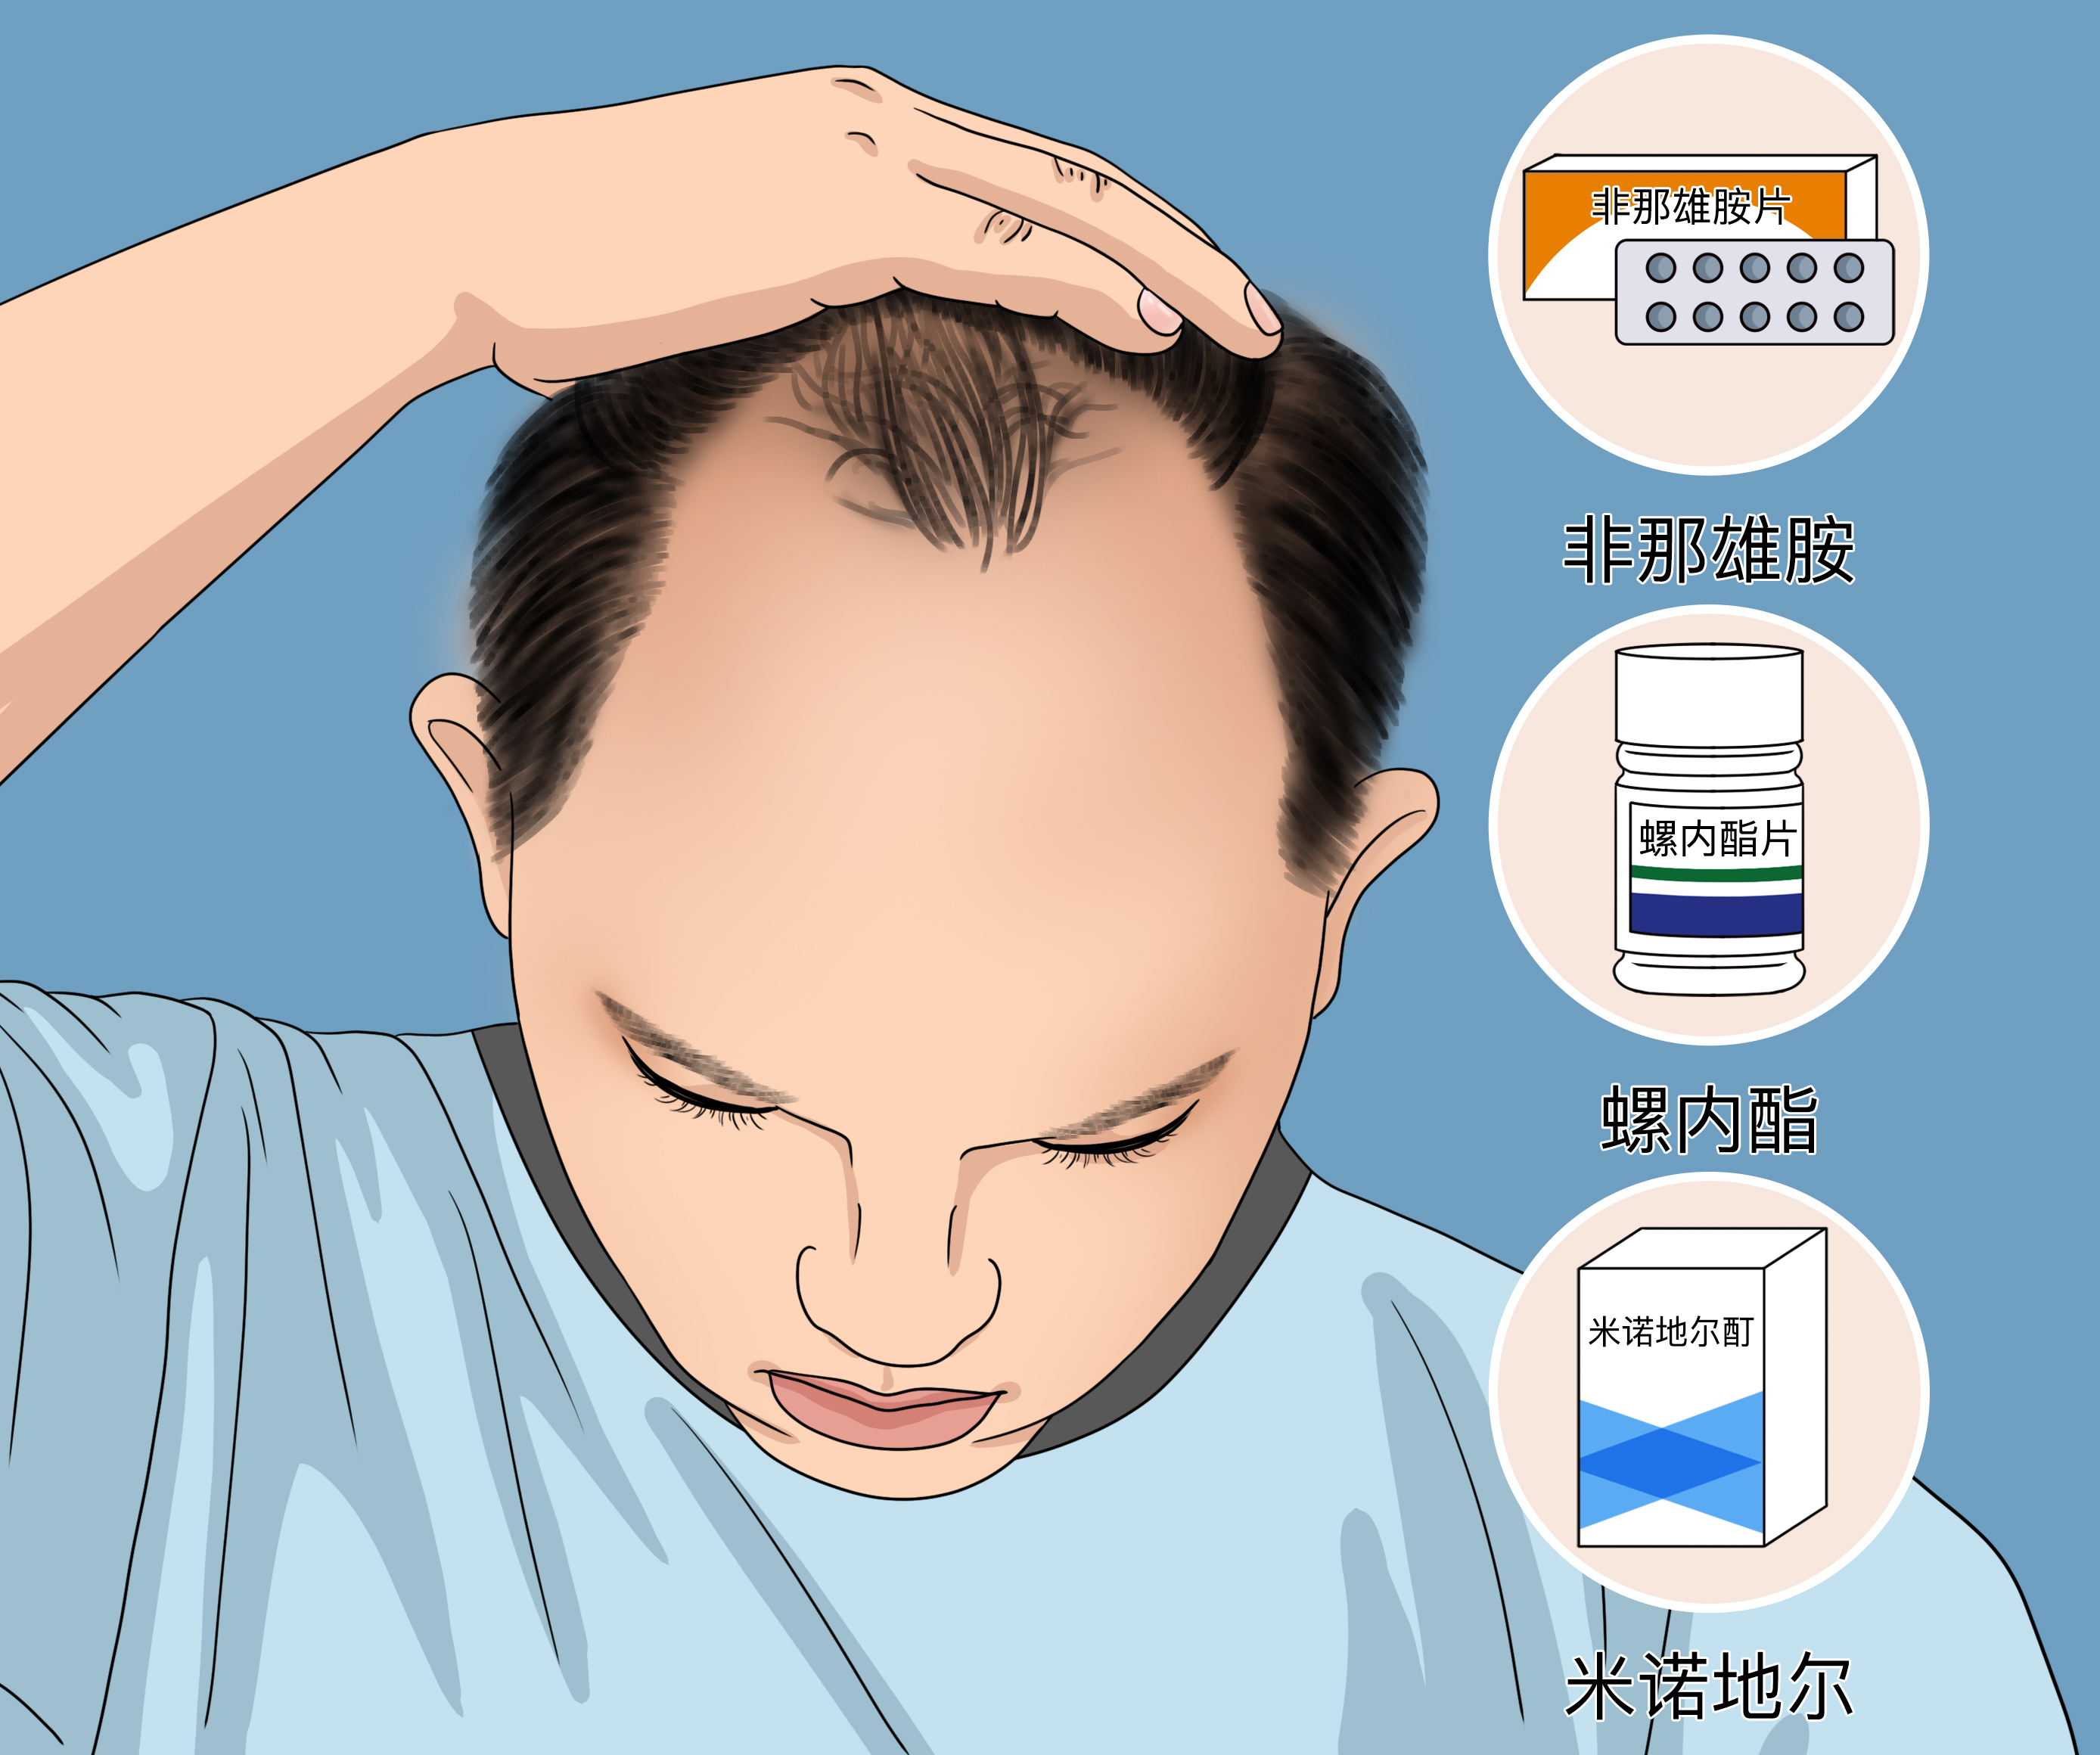 #脱发脂溢性脱发的成因是什么？ 👦👨脂溢性脱发是脱_圈子-新氧美容整形